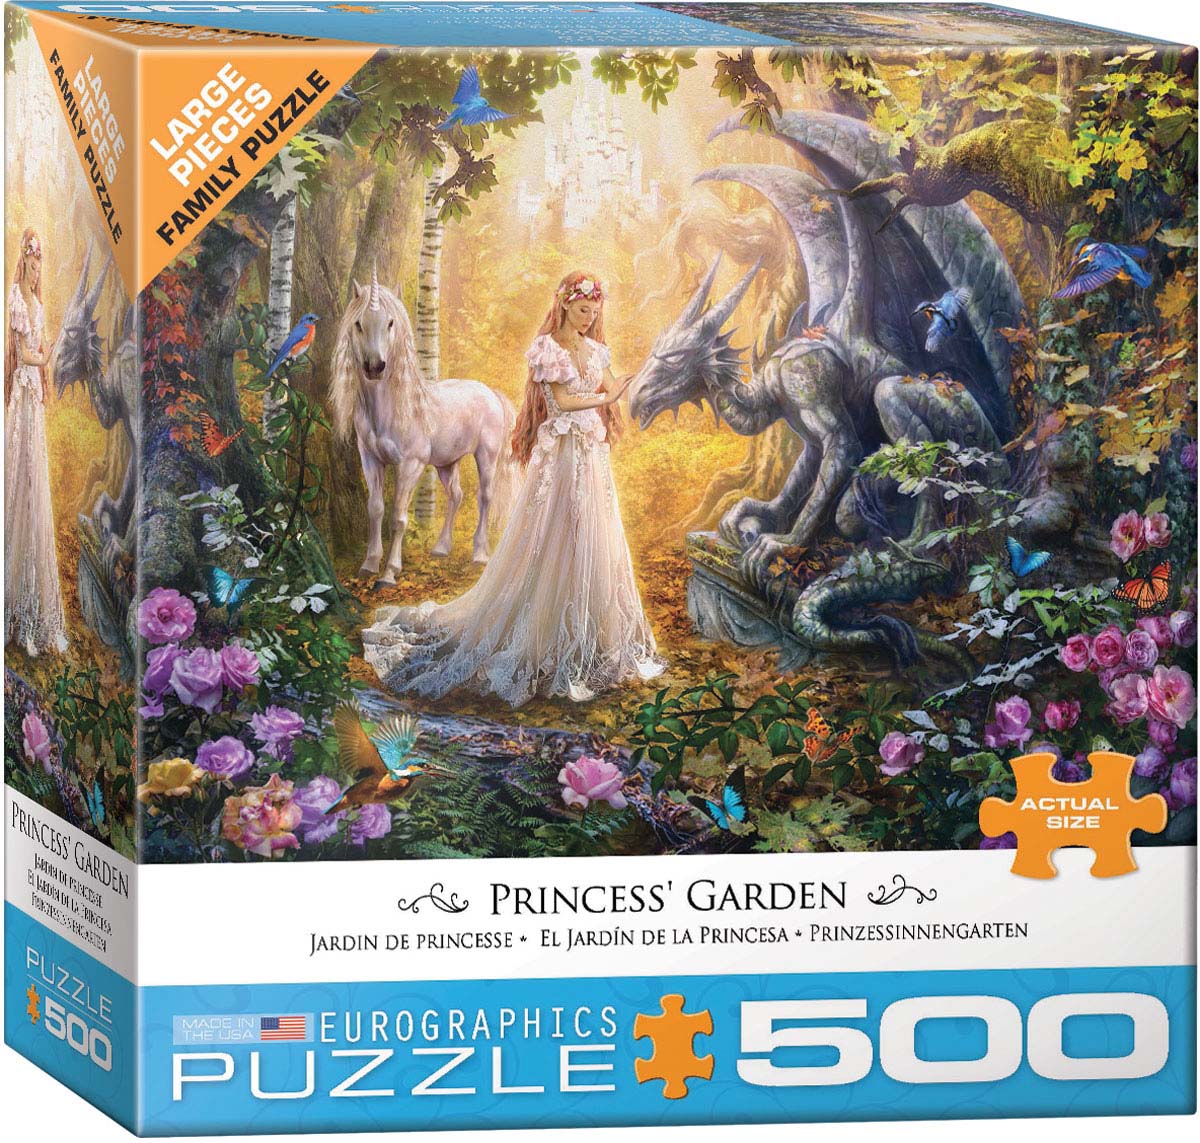 Princess' Garden